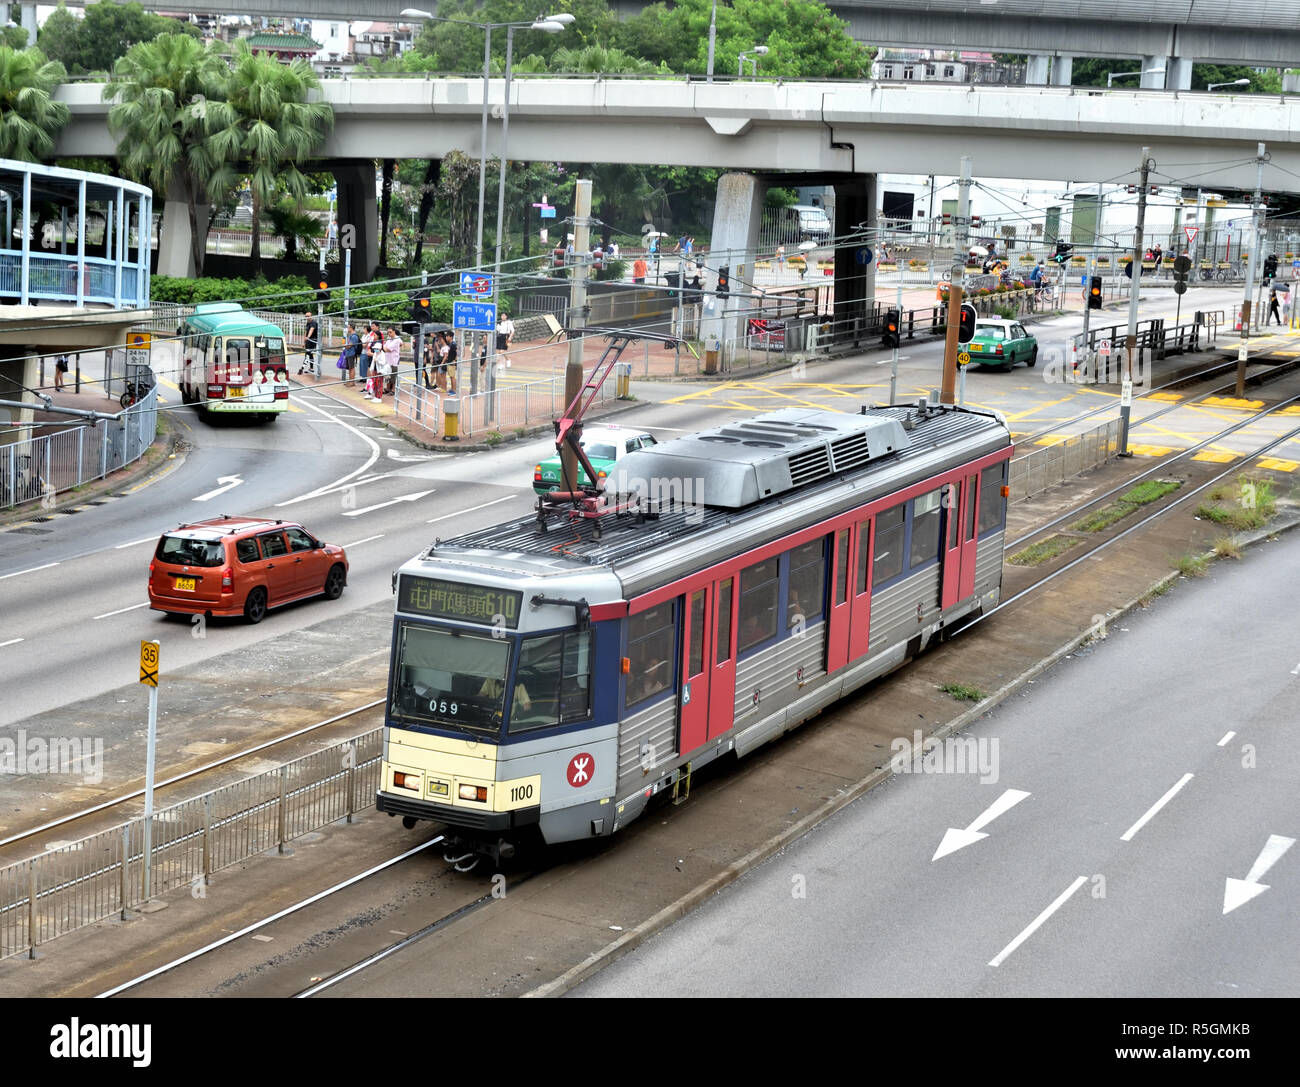 Il tram del Light Rail Transit System che offre servizi swift tra aree di Yuen Long e Tuen Mun i distretti. Foto Stock